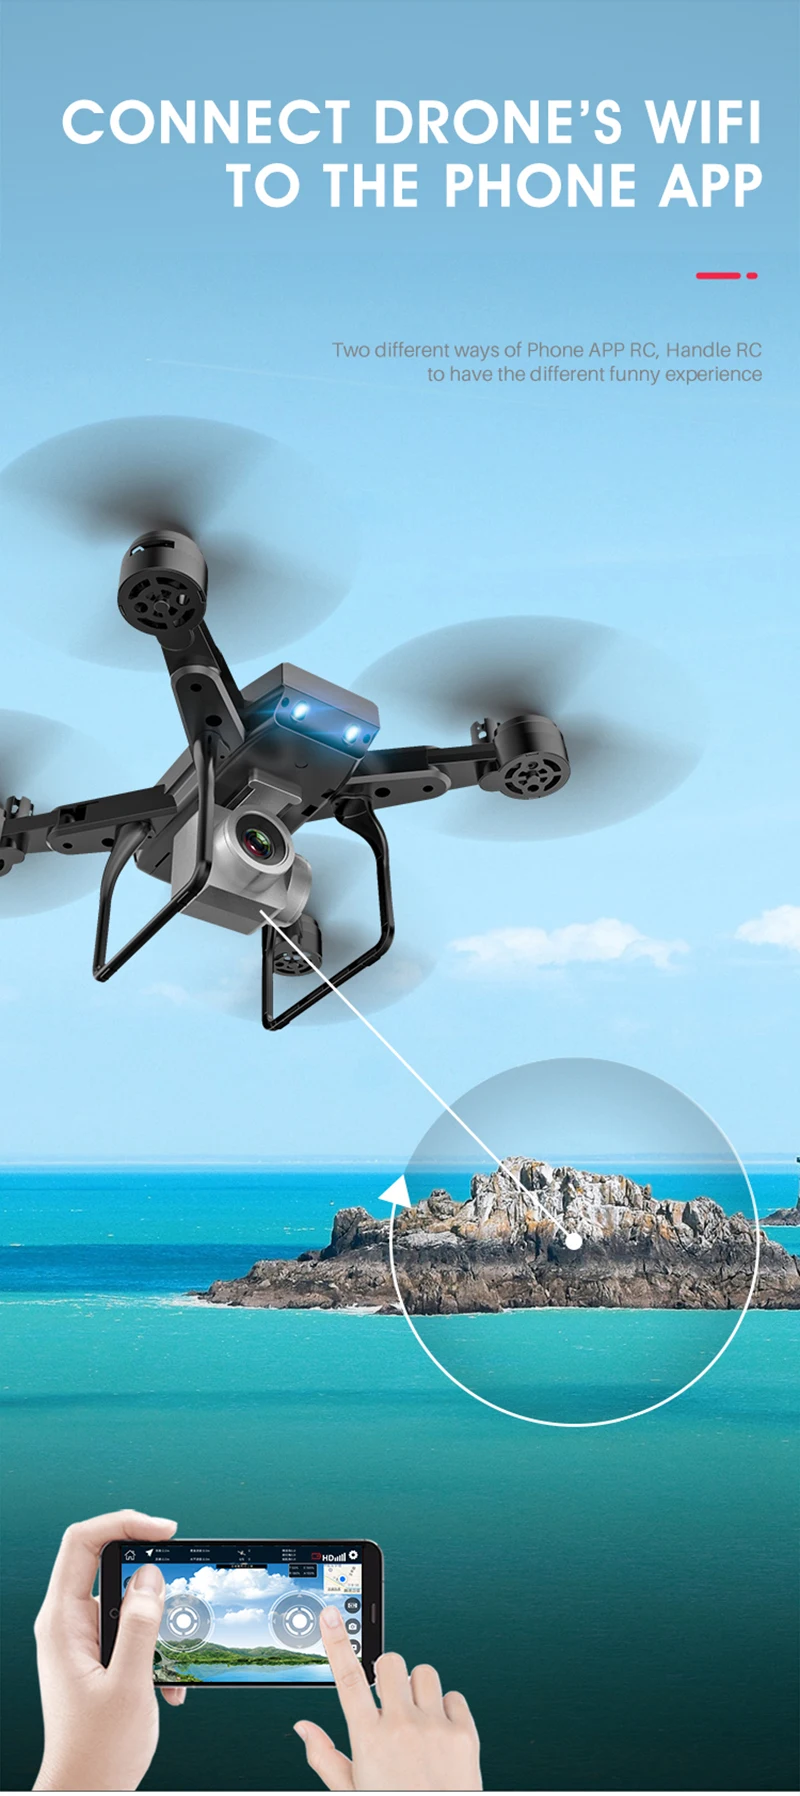 KY606D Дрон 4k HD аэрофотосъемка 20 минут летное воздушное давление Hover ключ взлет Rc вертолет 1080p четырехосный самолет квадрокоптер игрушки дрон